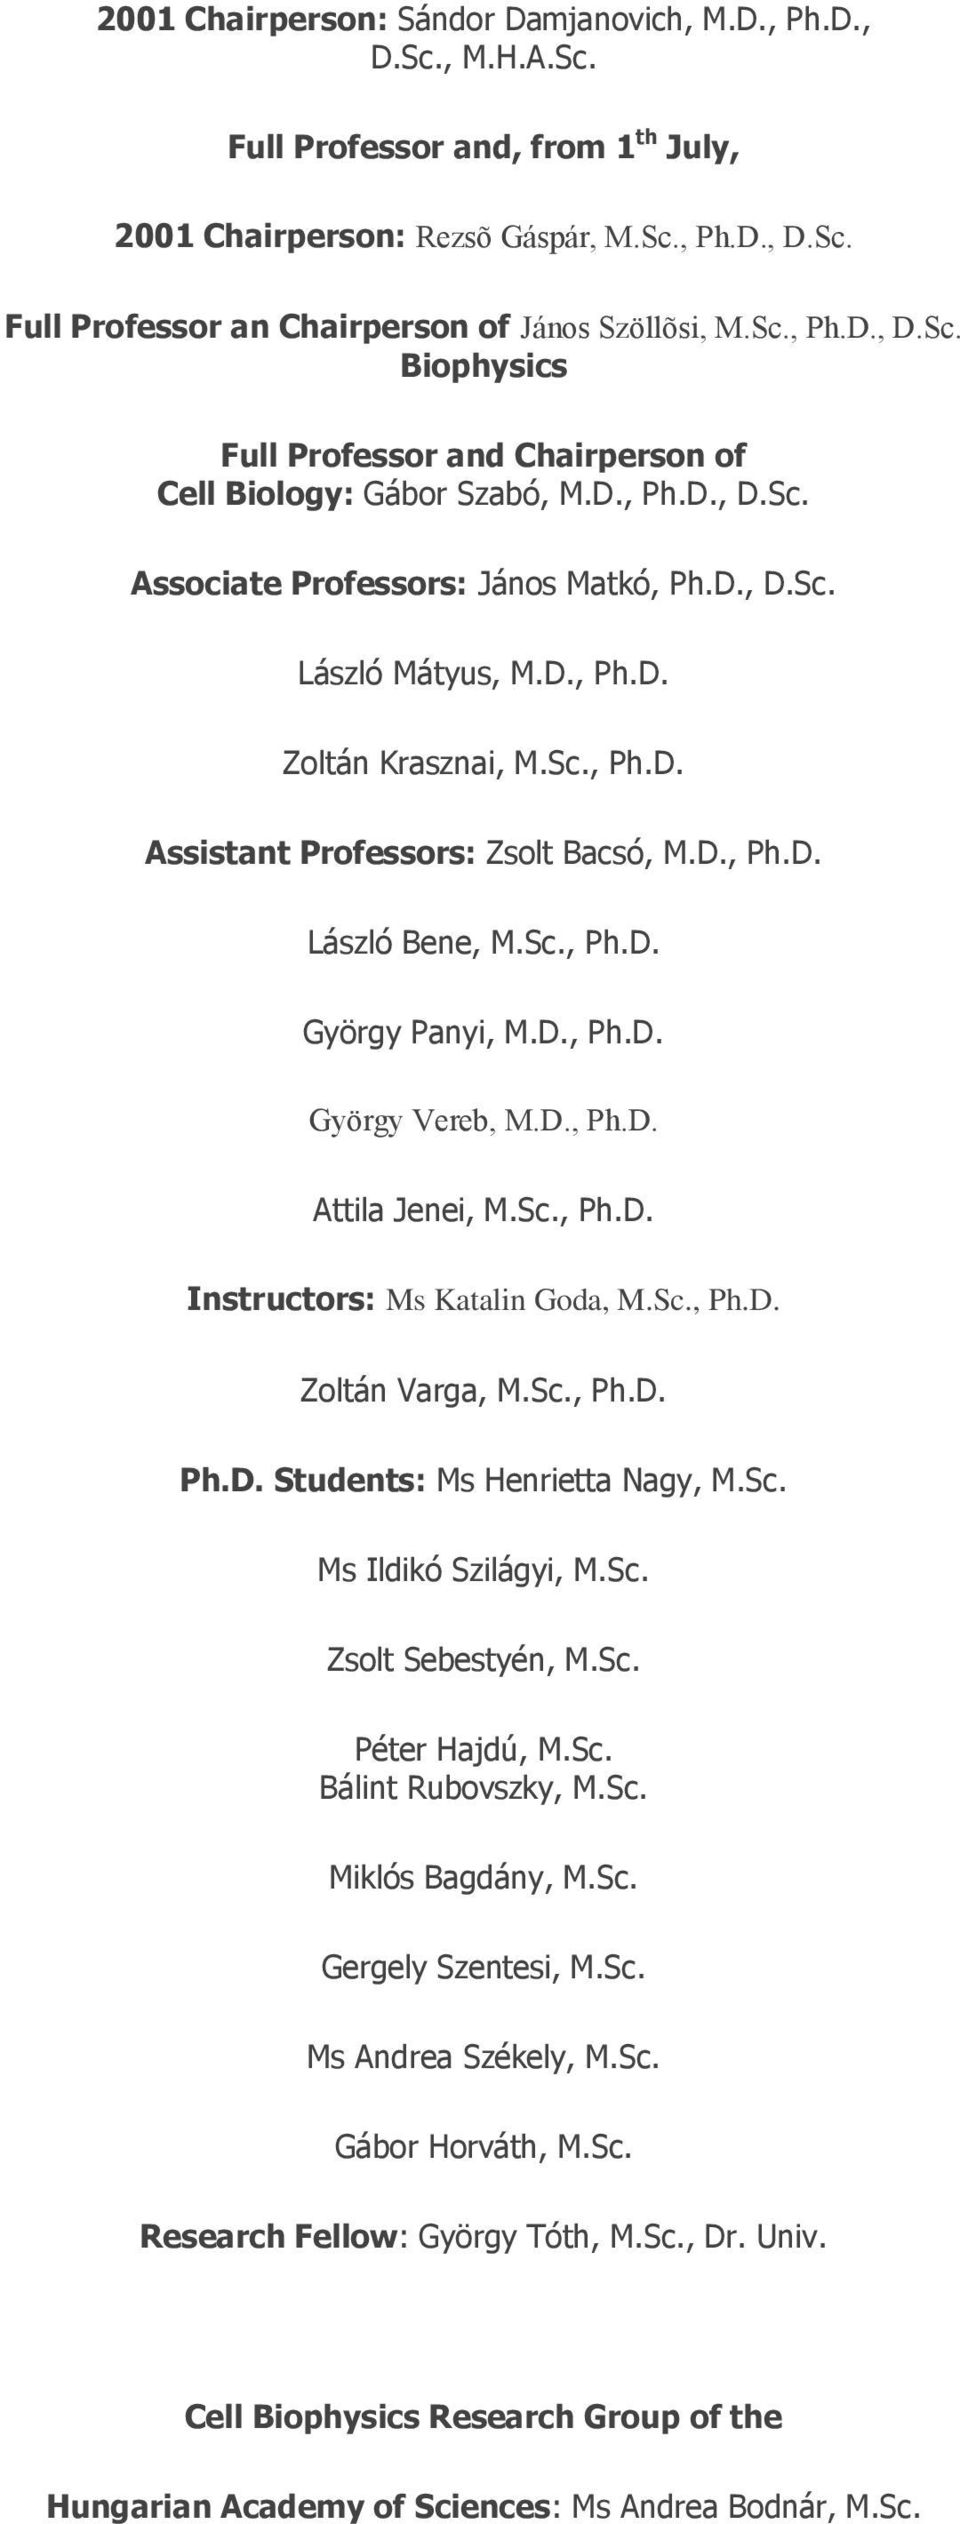 Sc., Ph.D. Assistant Professors: Zsolt Bacsó, M.D., Ph.D. László Bene, M.Sc., Ph.D. György Panyi, M.D., Ph.D. György Vereb, M.D., Ph.D. Attila Jenei, M.Sc., Ph.D. Instructors: Ms Katalin Goda, M.Sc., Ph.D. Zoltán Varga, M.